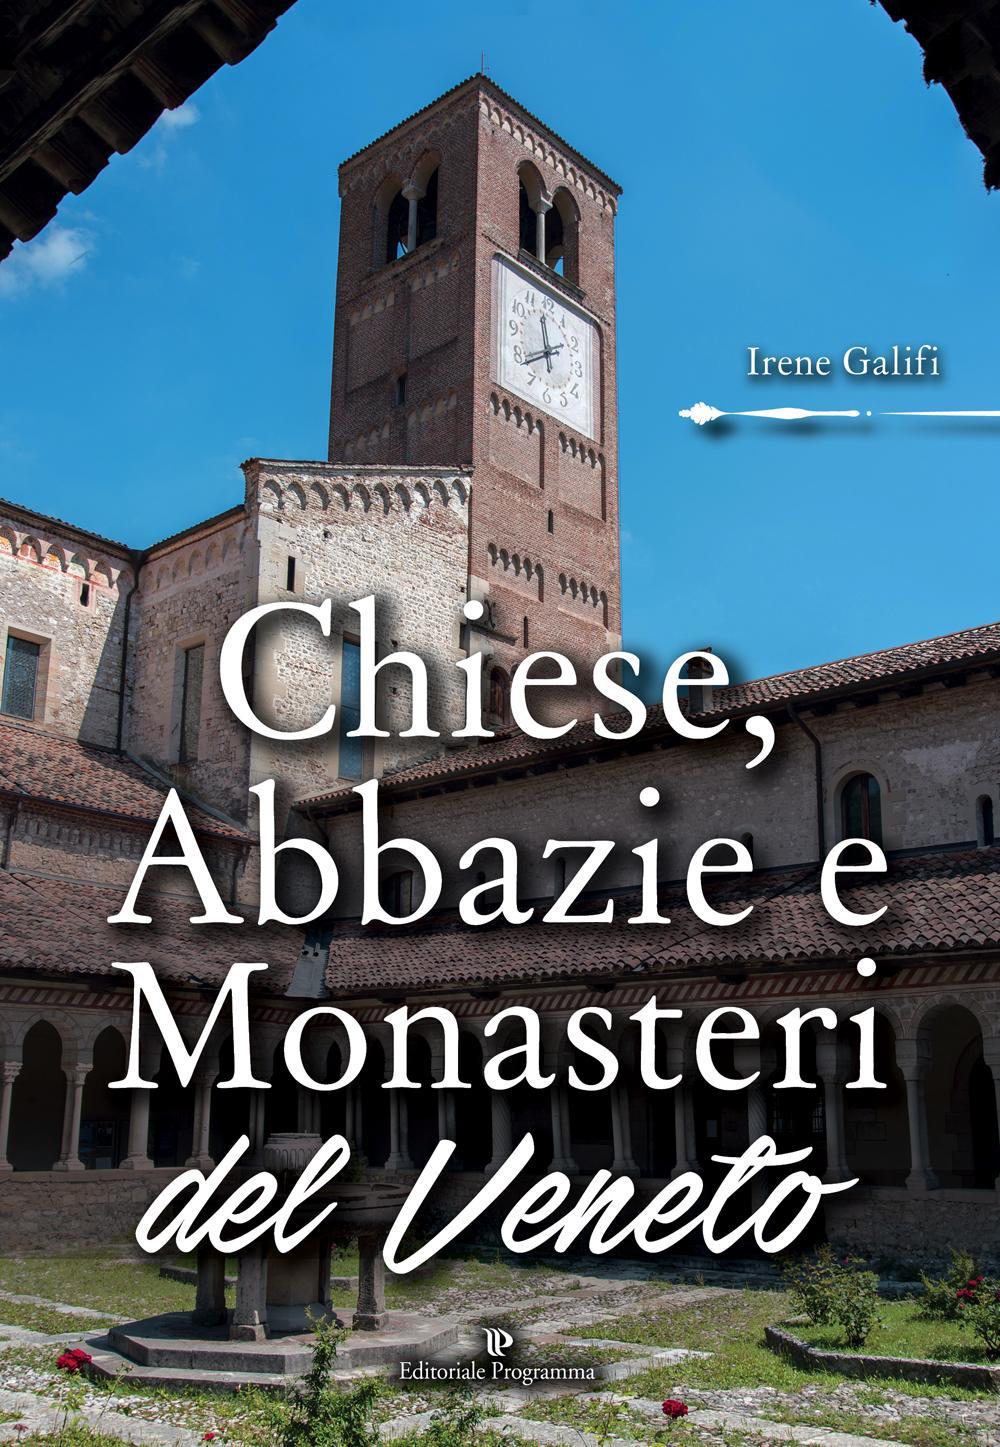 Chiese, abbazie e monasteri del Veneto